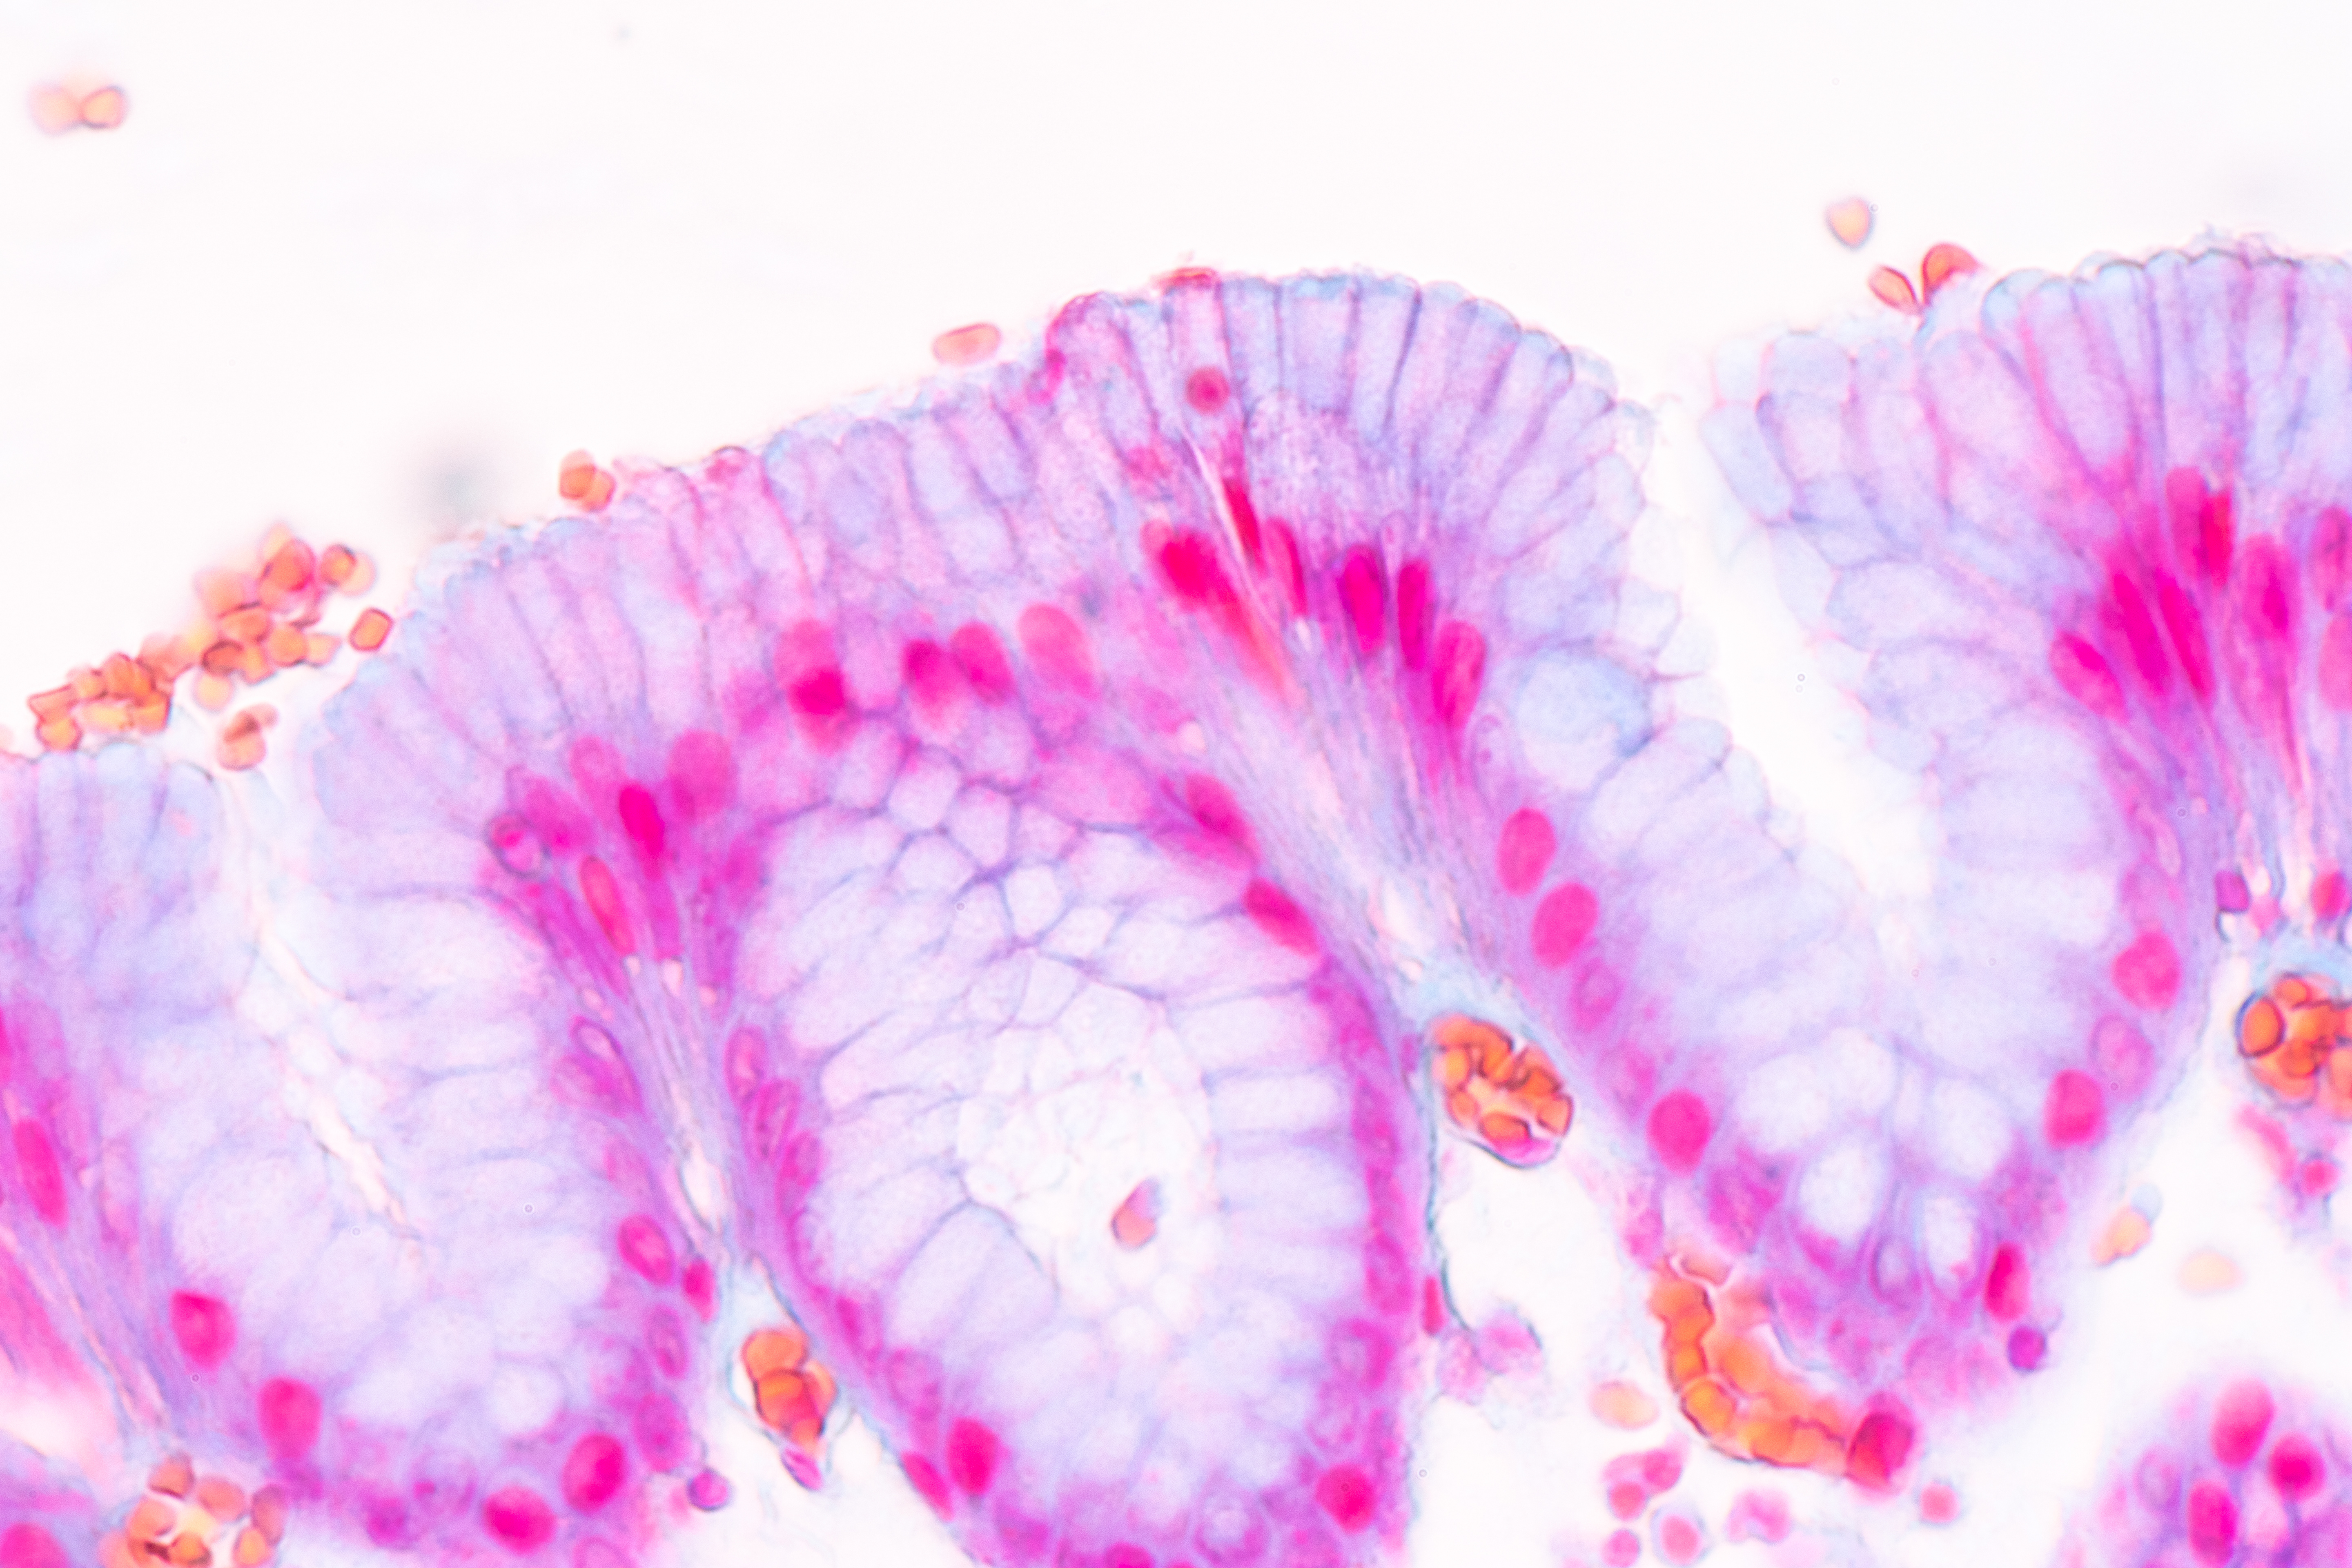 La couche superficielle de la muqueuse, appelée épithélium, « se ressaisit », via ses centaines voire milliers de cellules épithéliales en se contractant rapidement lorsqu'elle reconnaît une attaque bactérienne (Visuel Fotolia)